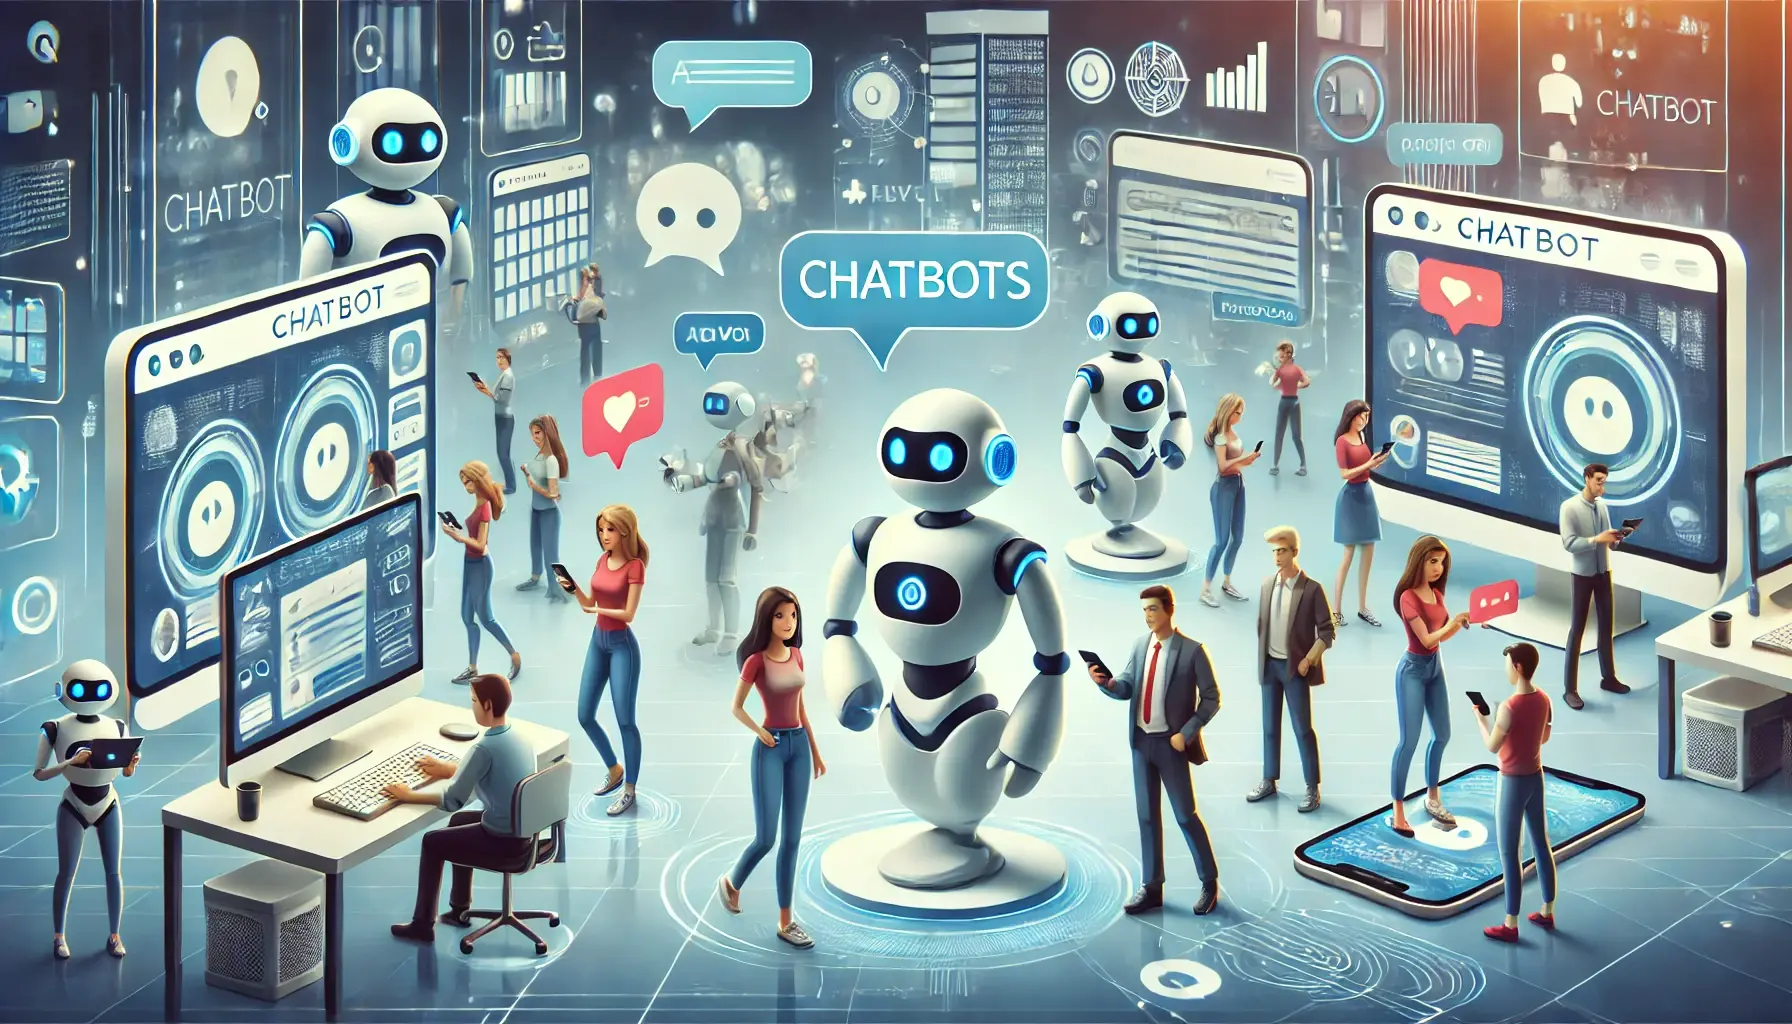 
  
  A inteligência artificial (IA) está revolucionando a forma como interagimos com a tecnologia e os chatbots são um exemplo fascinante desse avanço. Nesta jornada, vamos explorar as 5 IAs mais incríveis em diferentes plataformas de chatbots, revelando como elas estão moldando o futuro da comunicação digital.

  1.